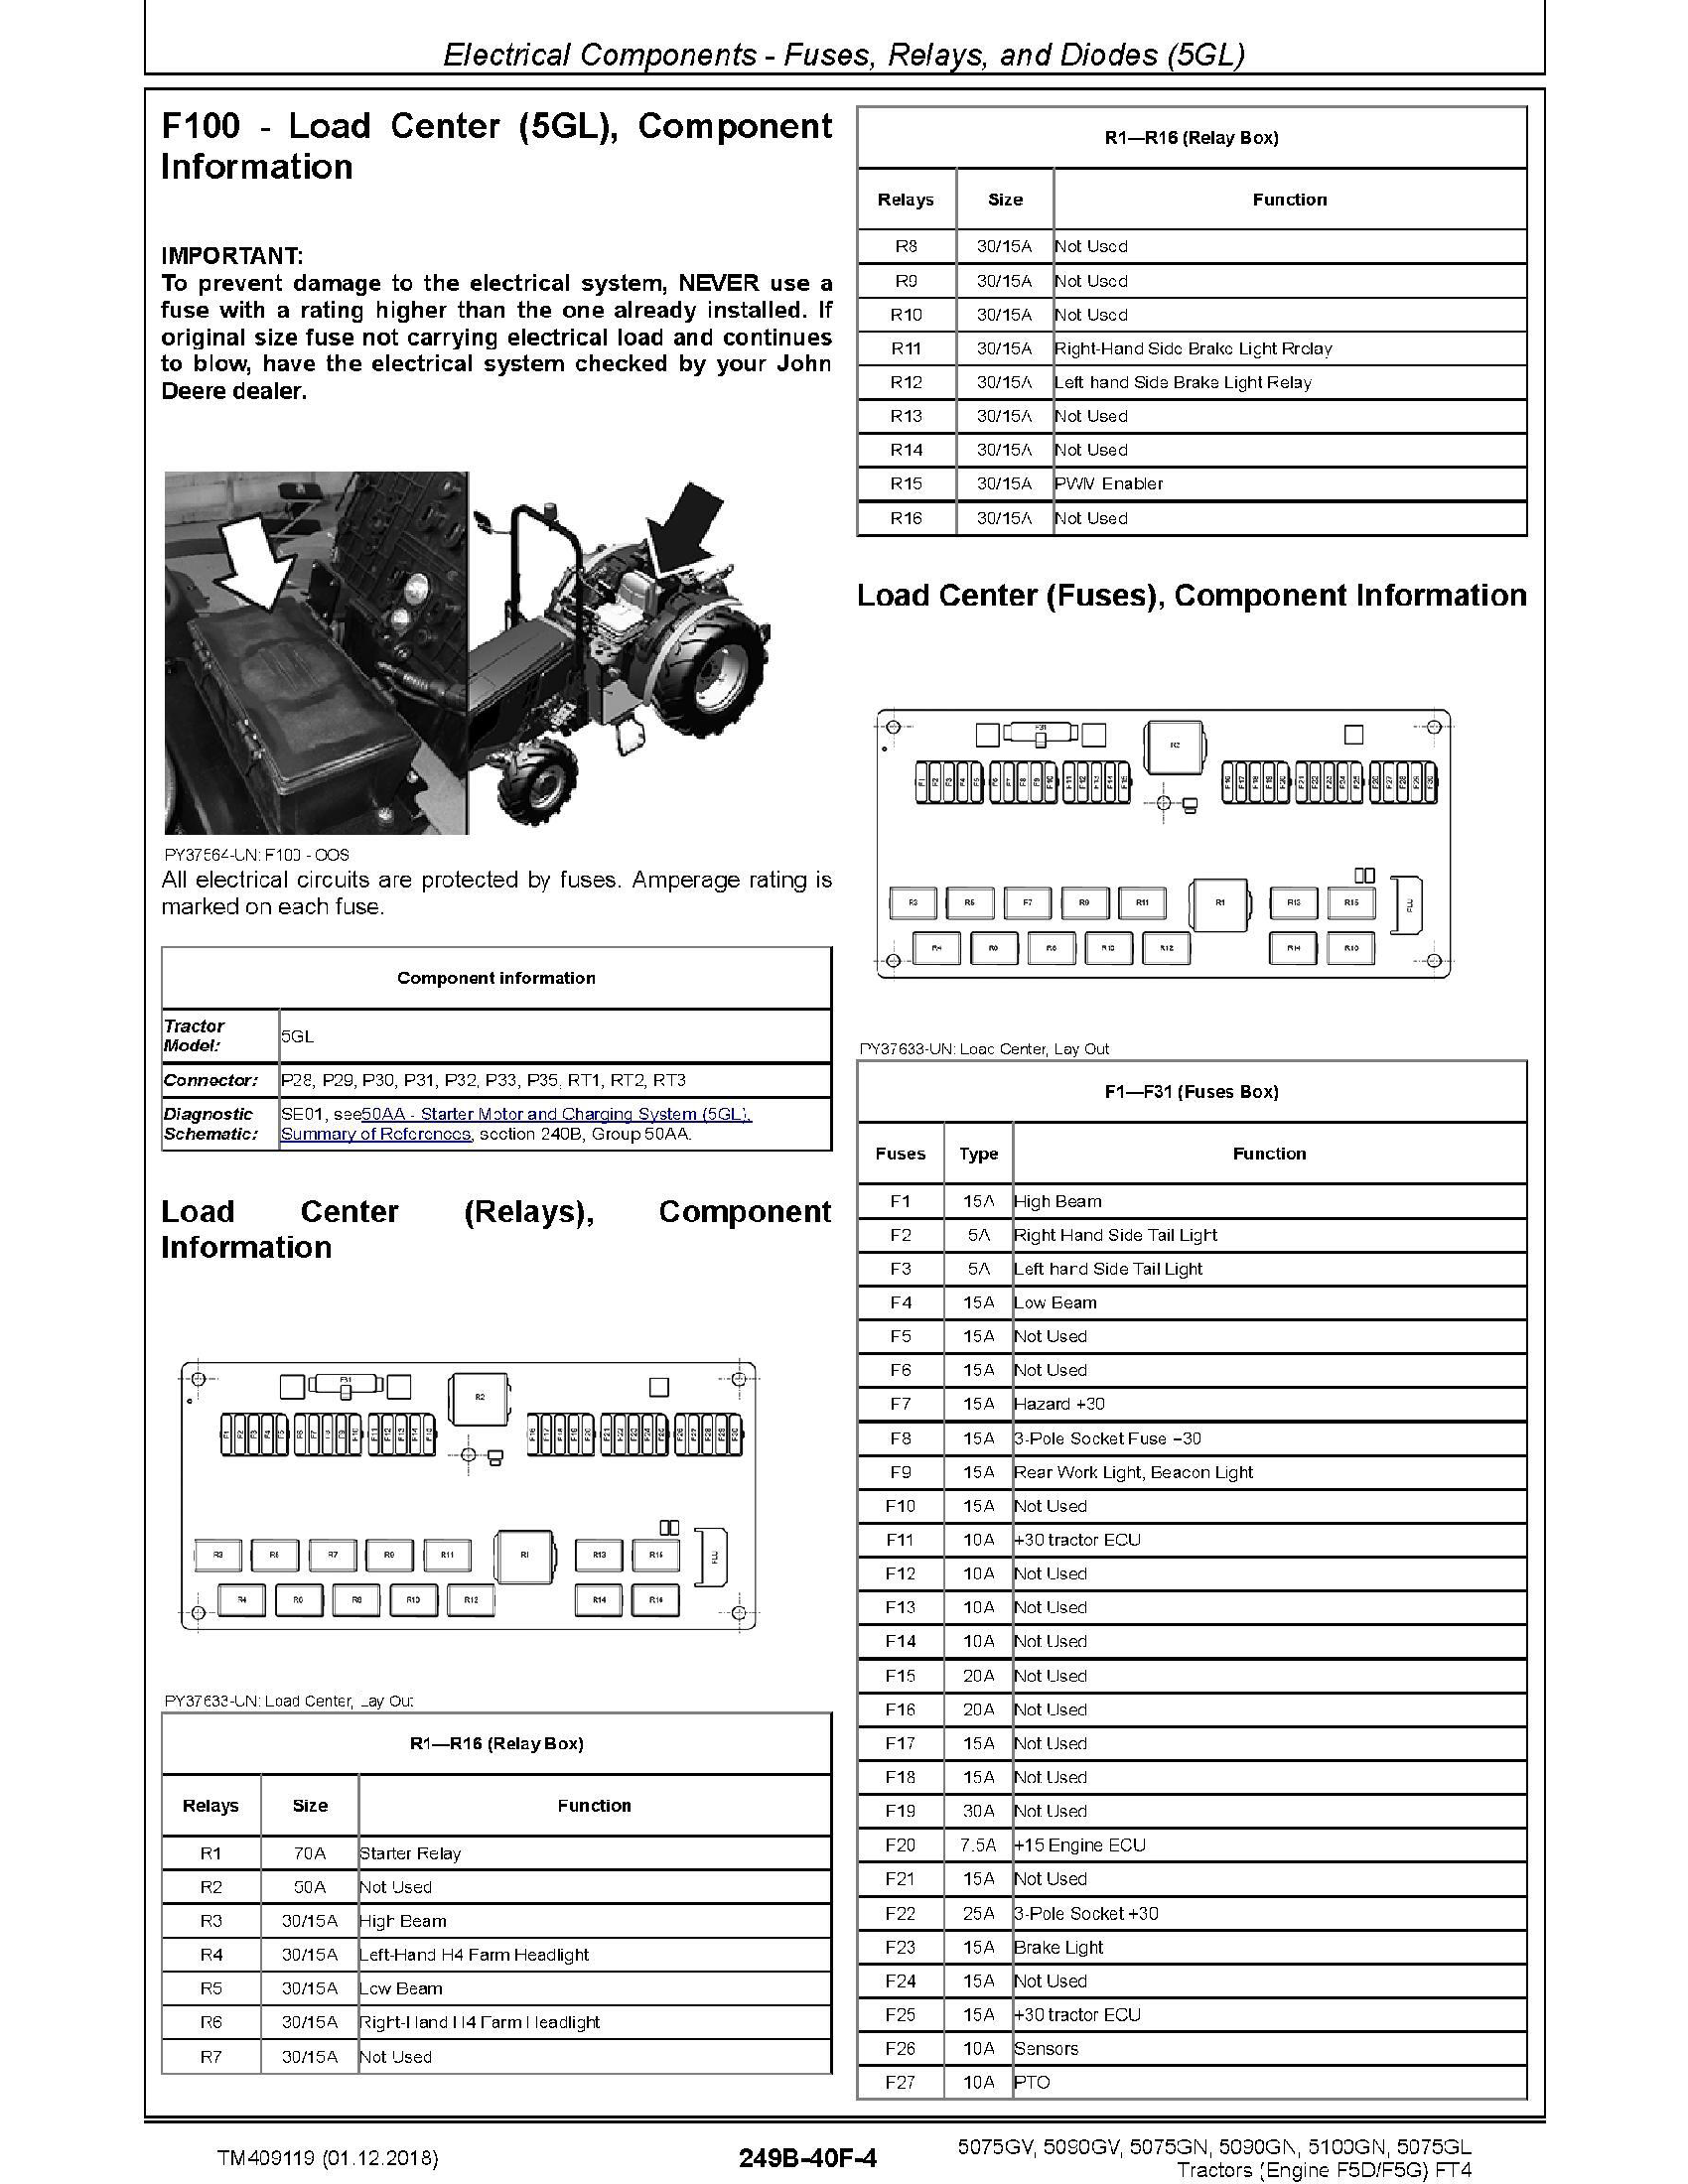 John Deere L330C manual pdf